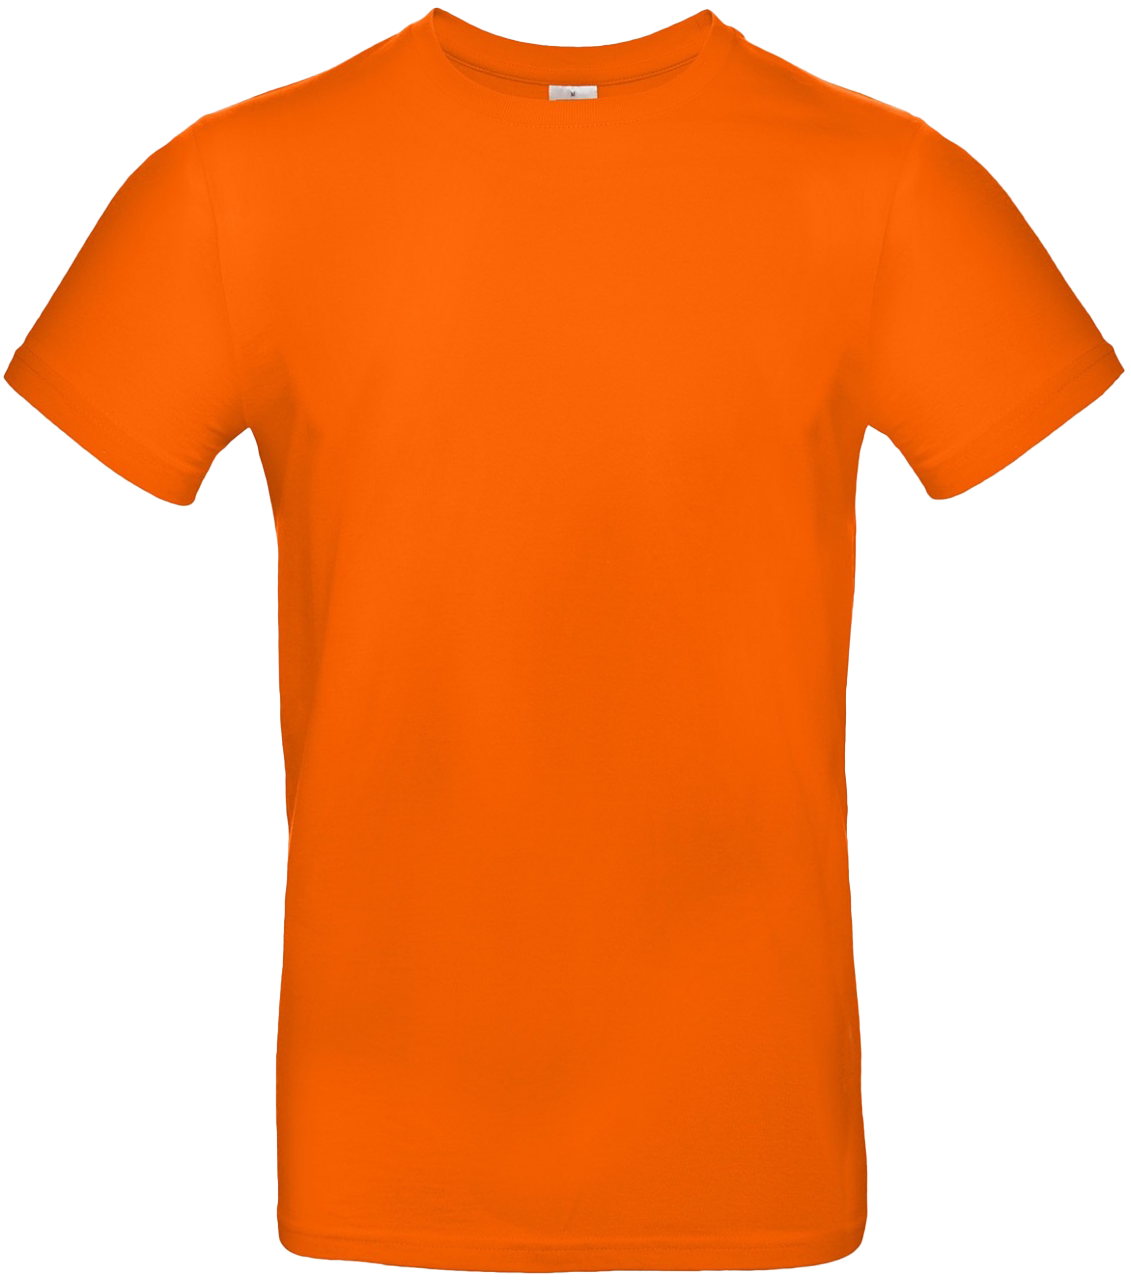 T-shirt E#190 Orange 48